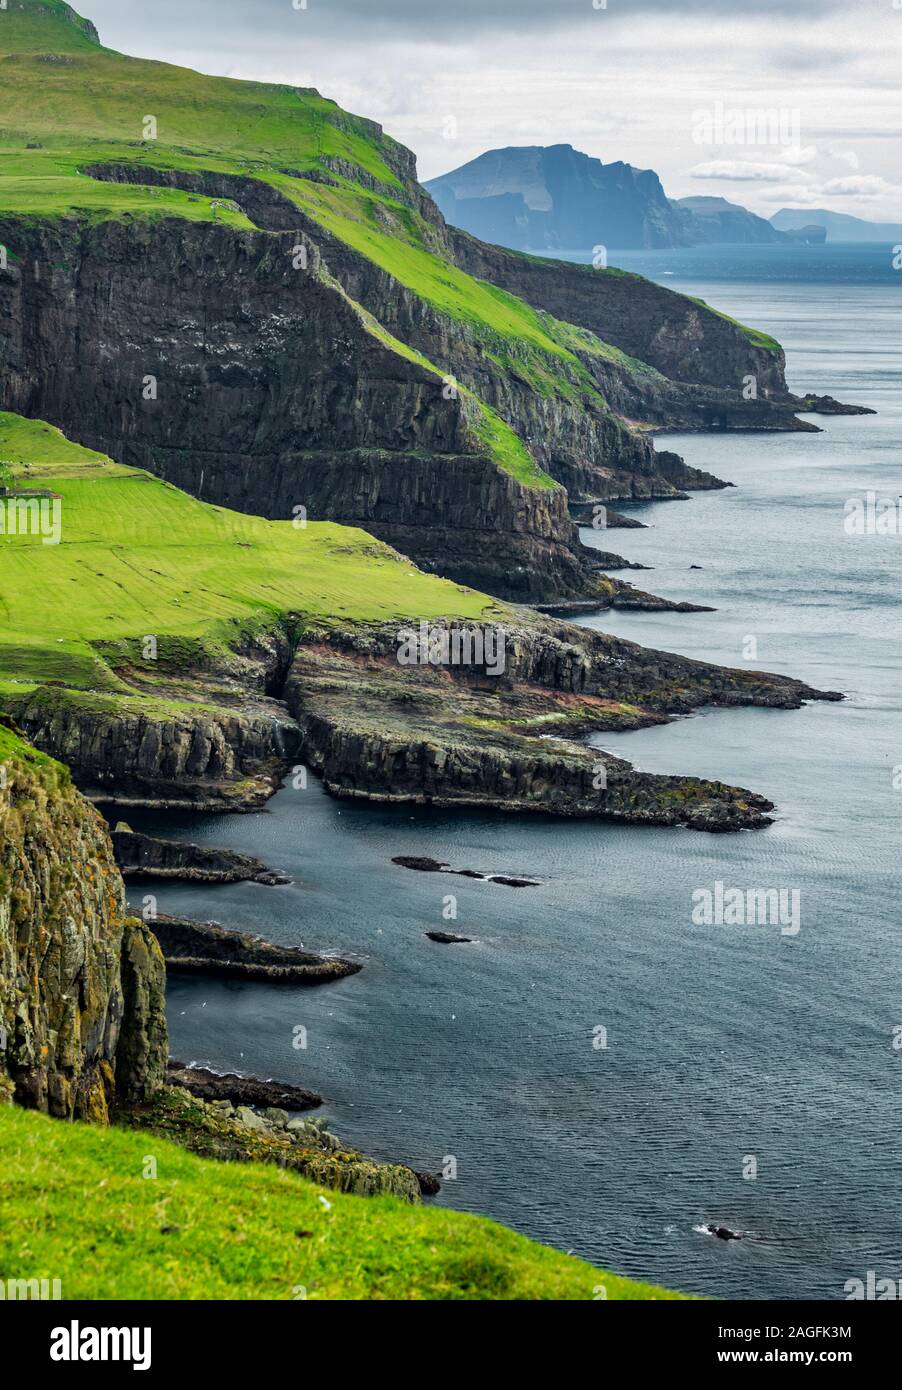 Steilküste der Insel Mykines in Färöer Inseln Stockfoto